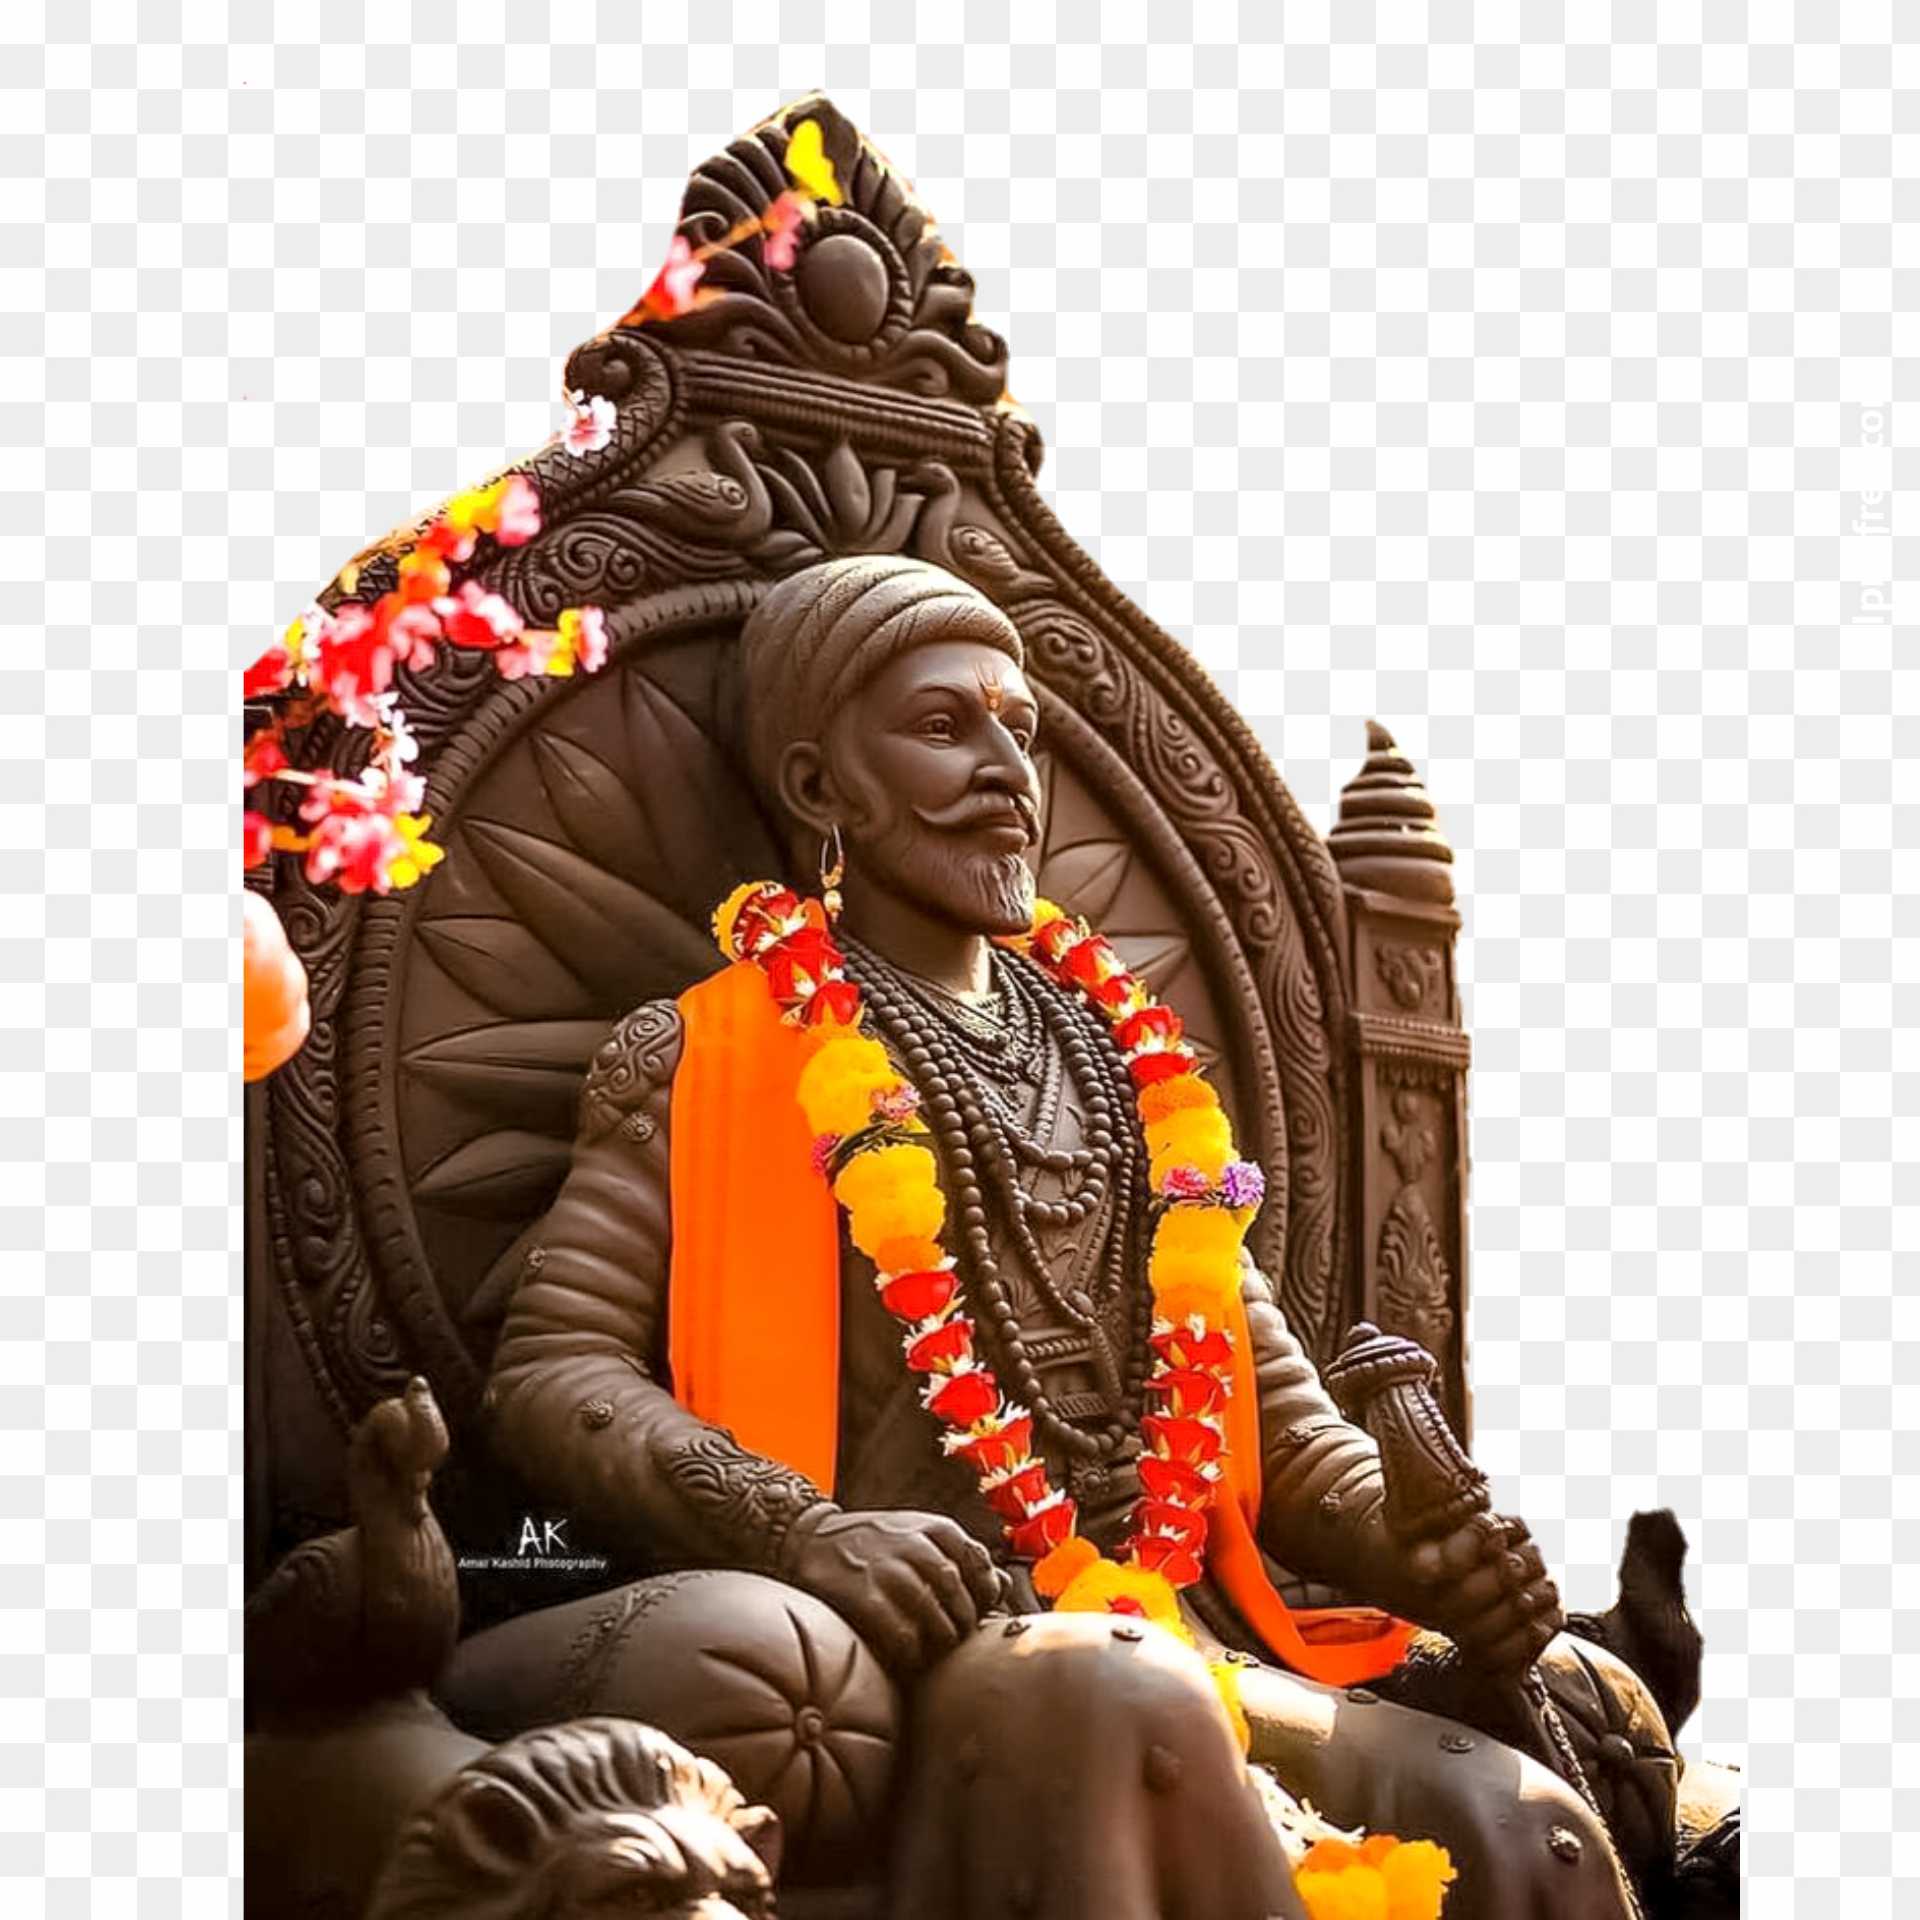 Chhatrapati Shivaji PNG images download